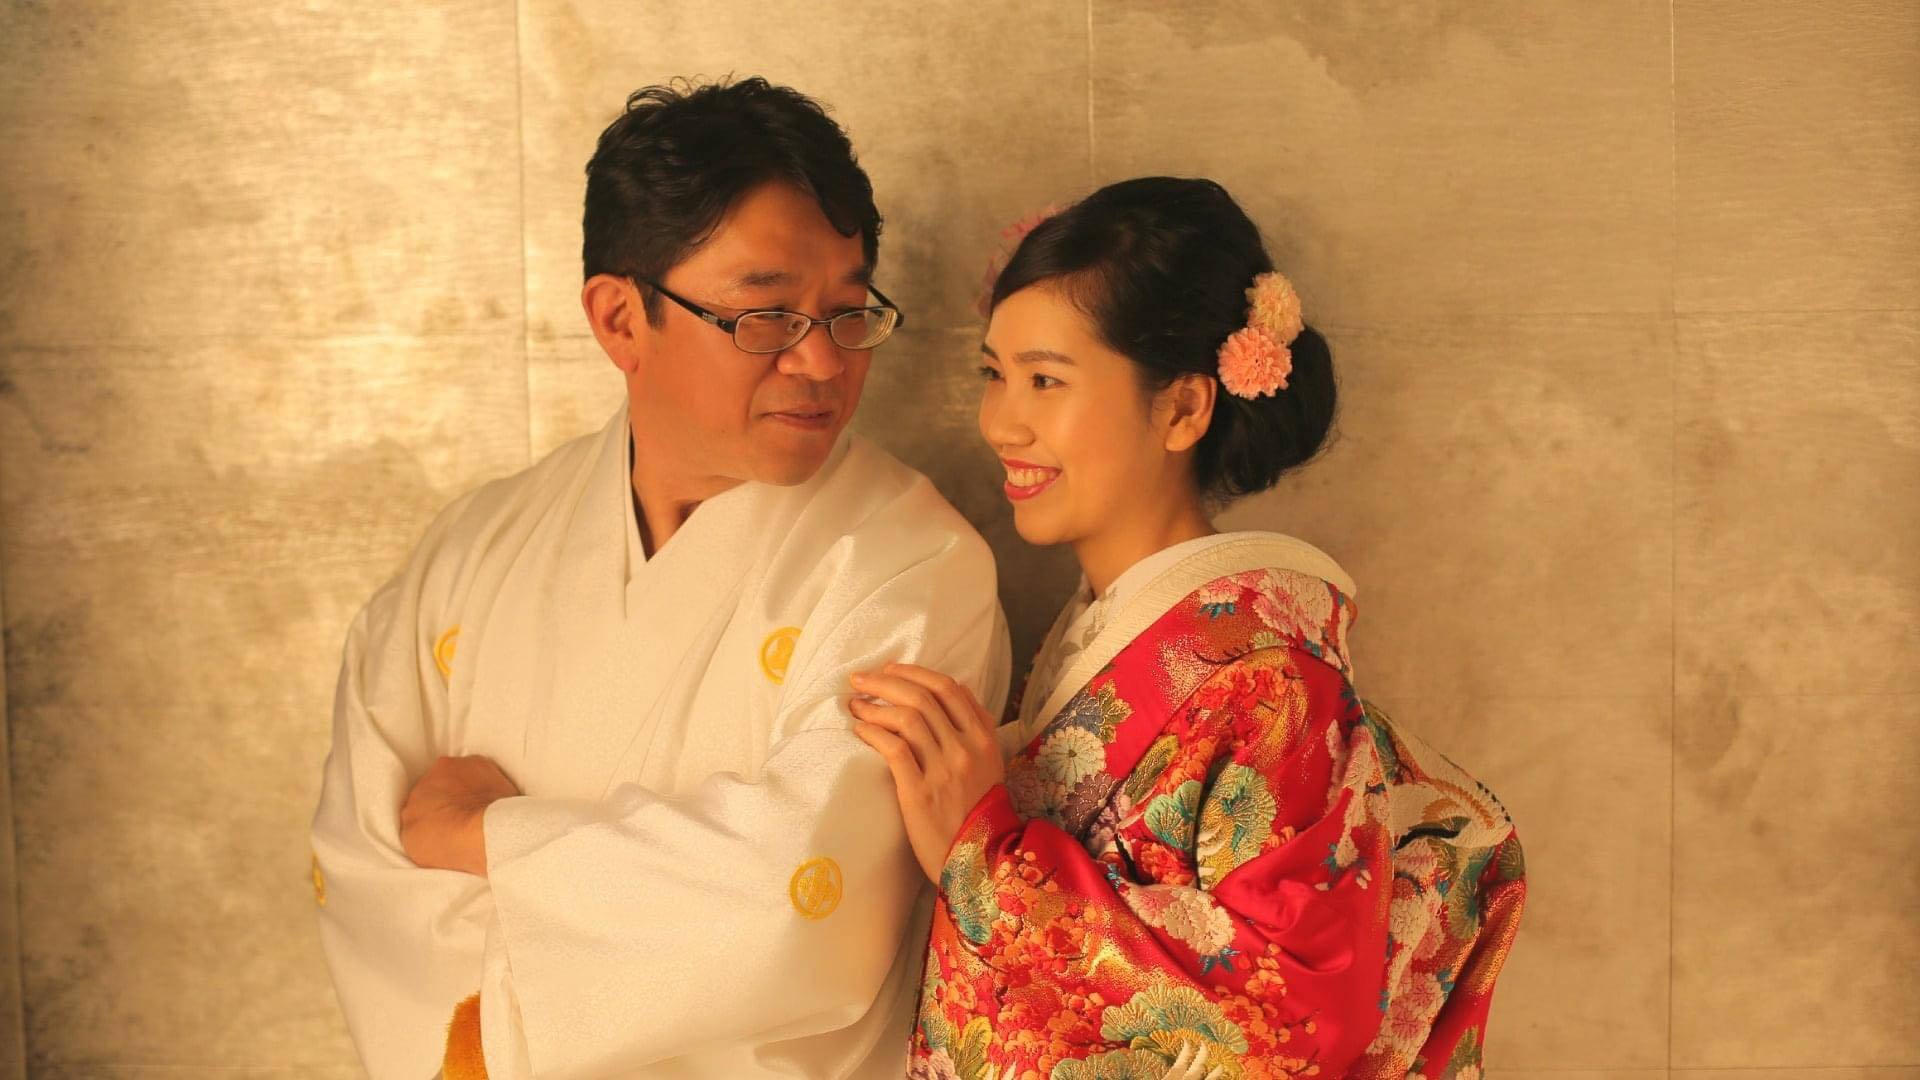 Cô gái miền Tây kể về người Nhật sau 3 năm làm dâu - Ảnh 4.